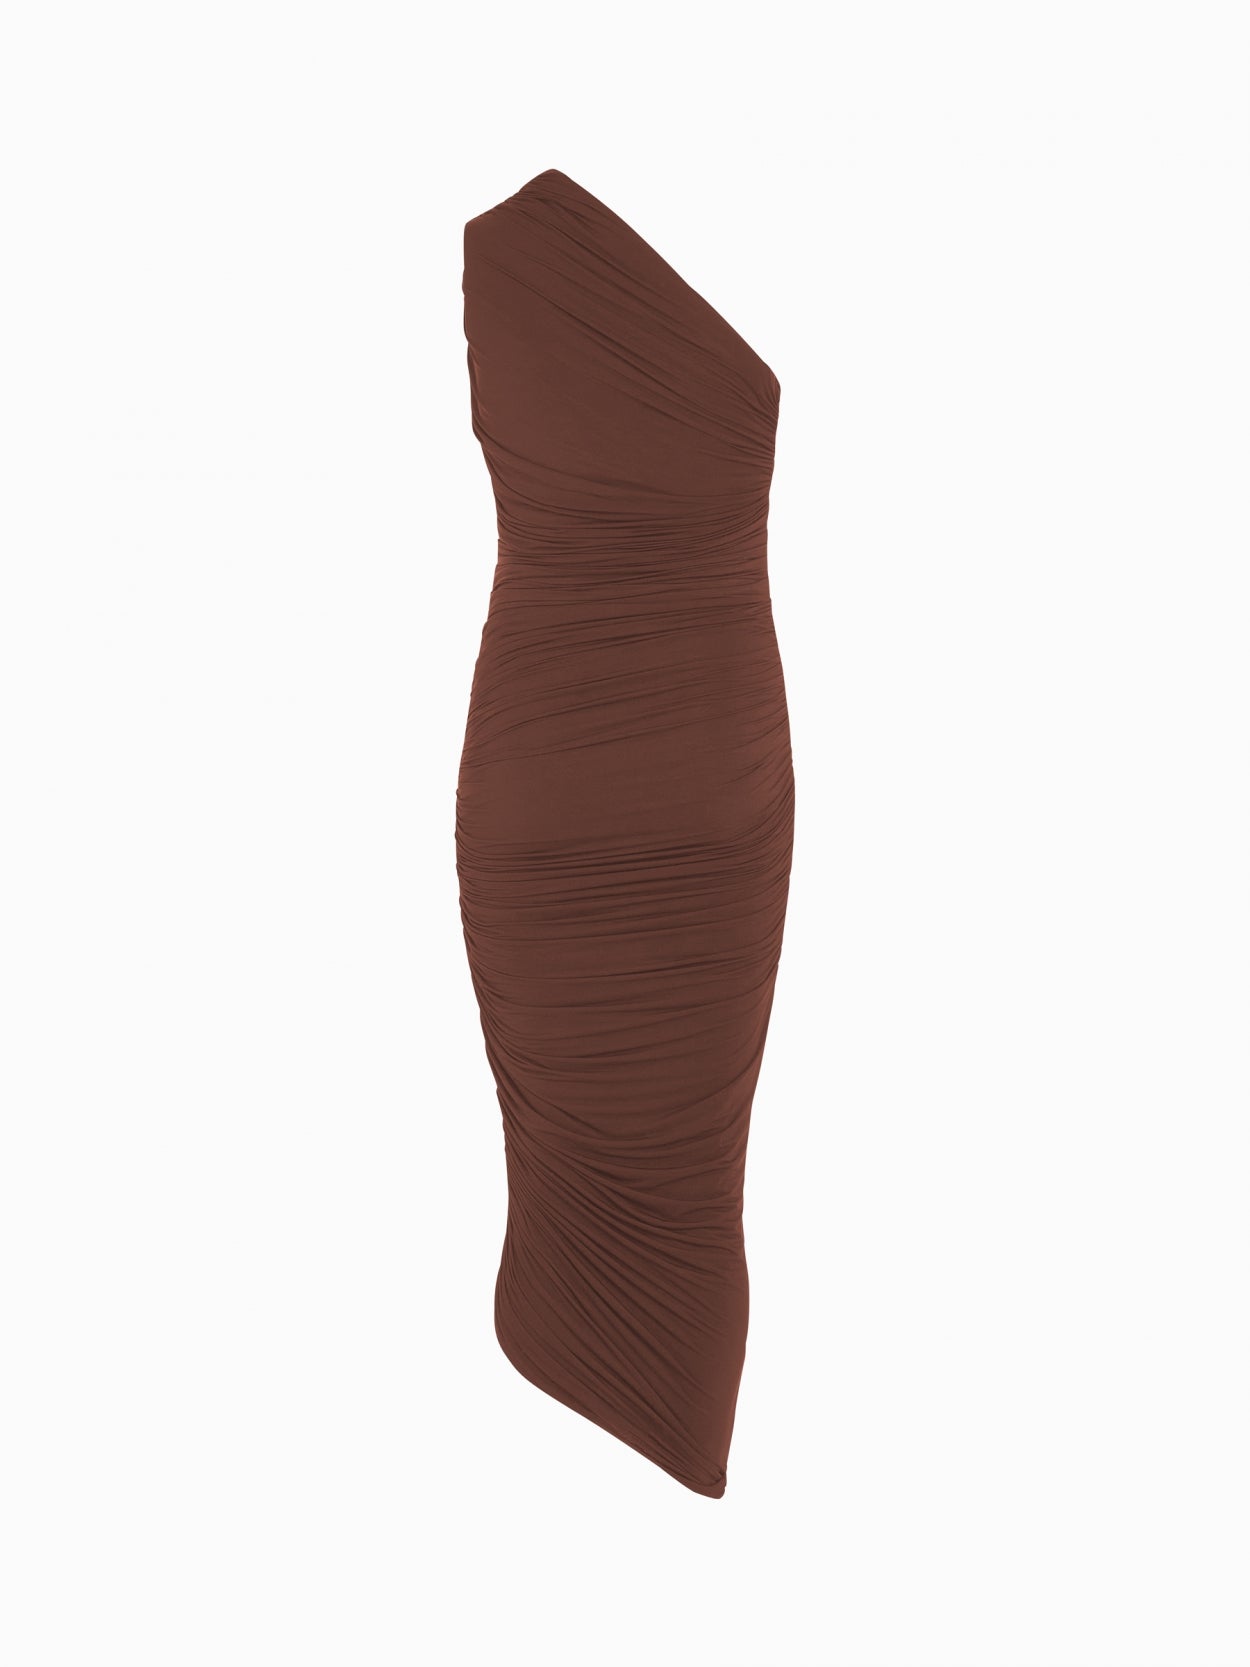 front packshot of a one shoulder draped brown dress